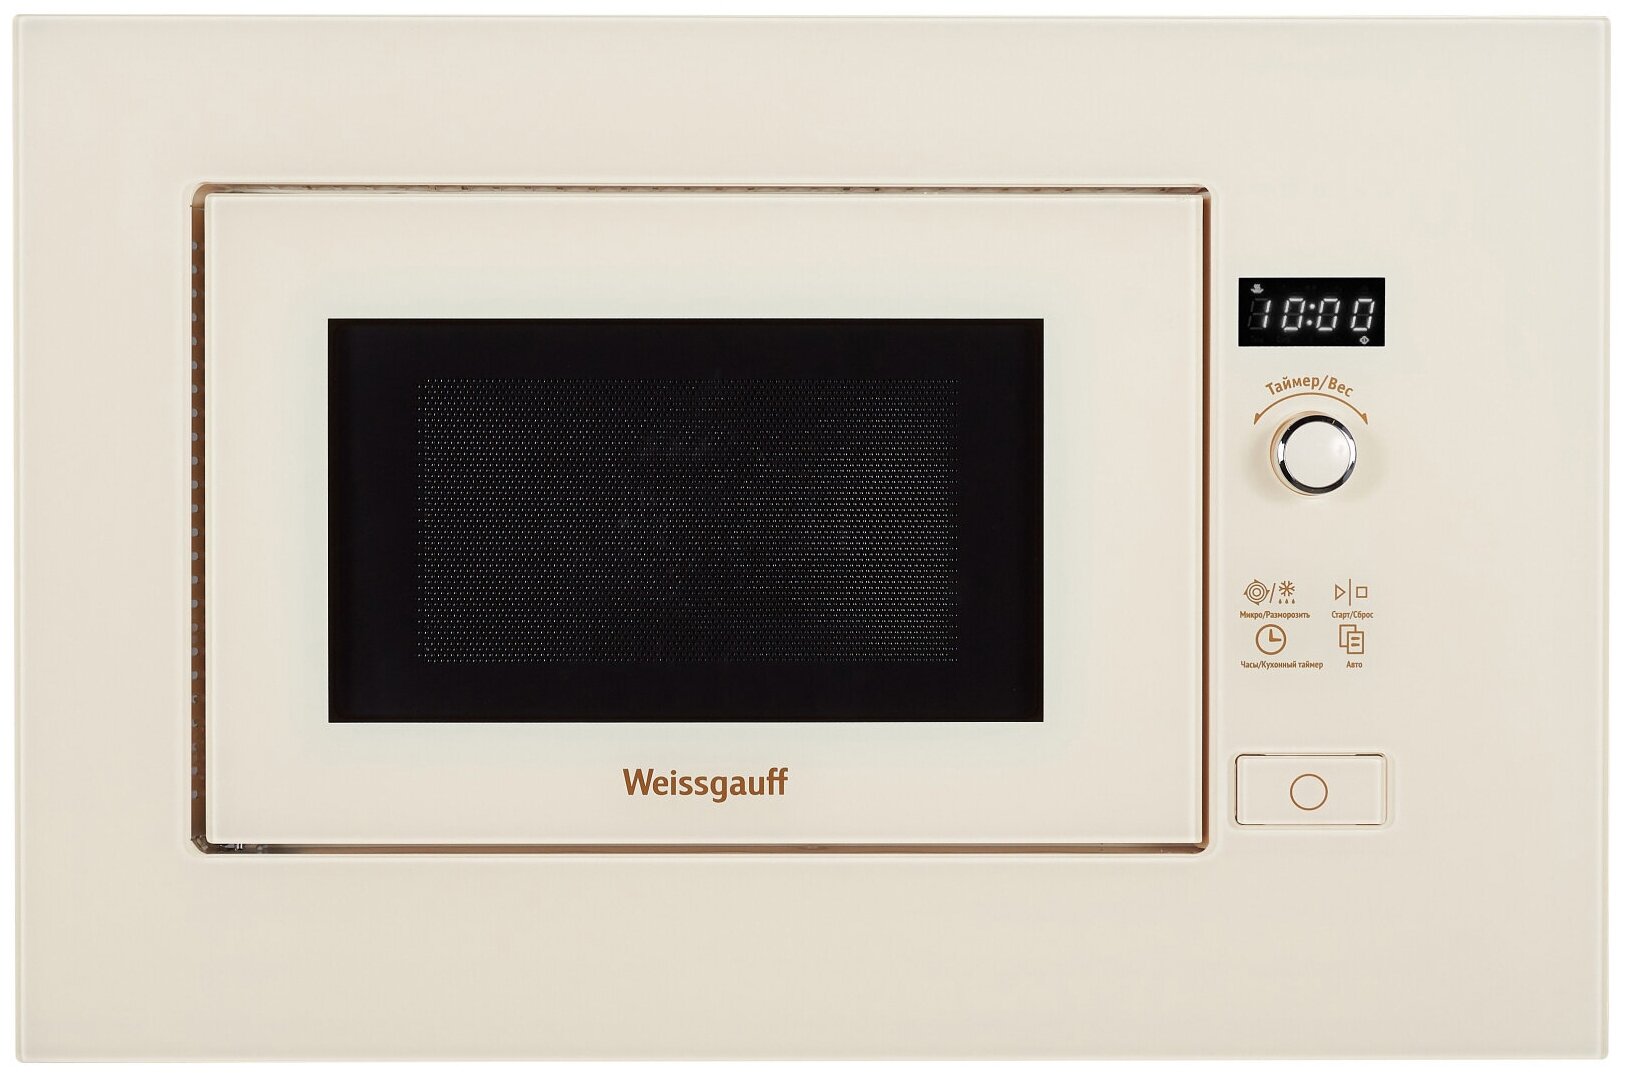 Микроволновая печь встраиваемая Weissgauff HMT-203, бежевый